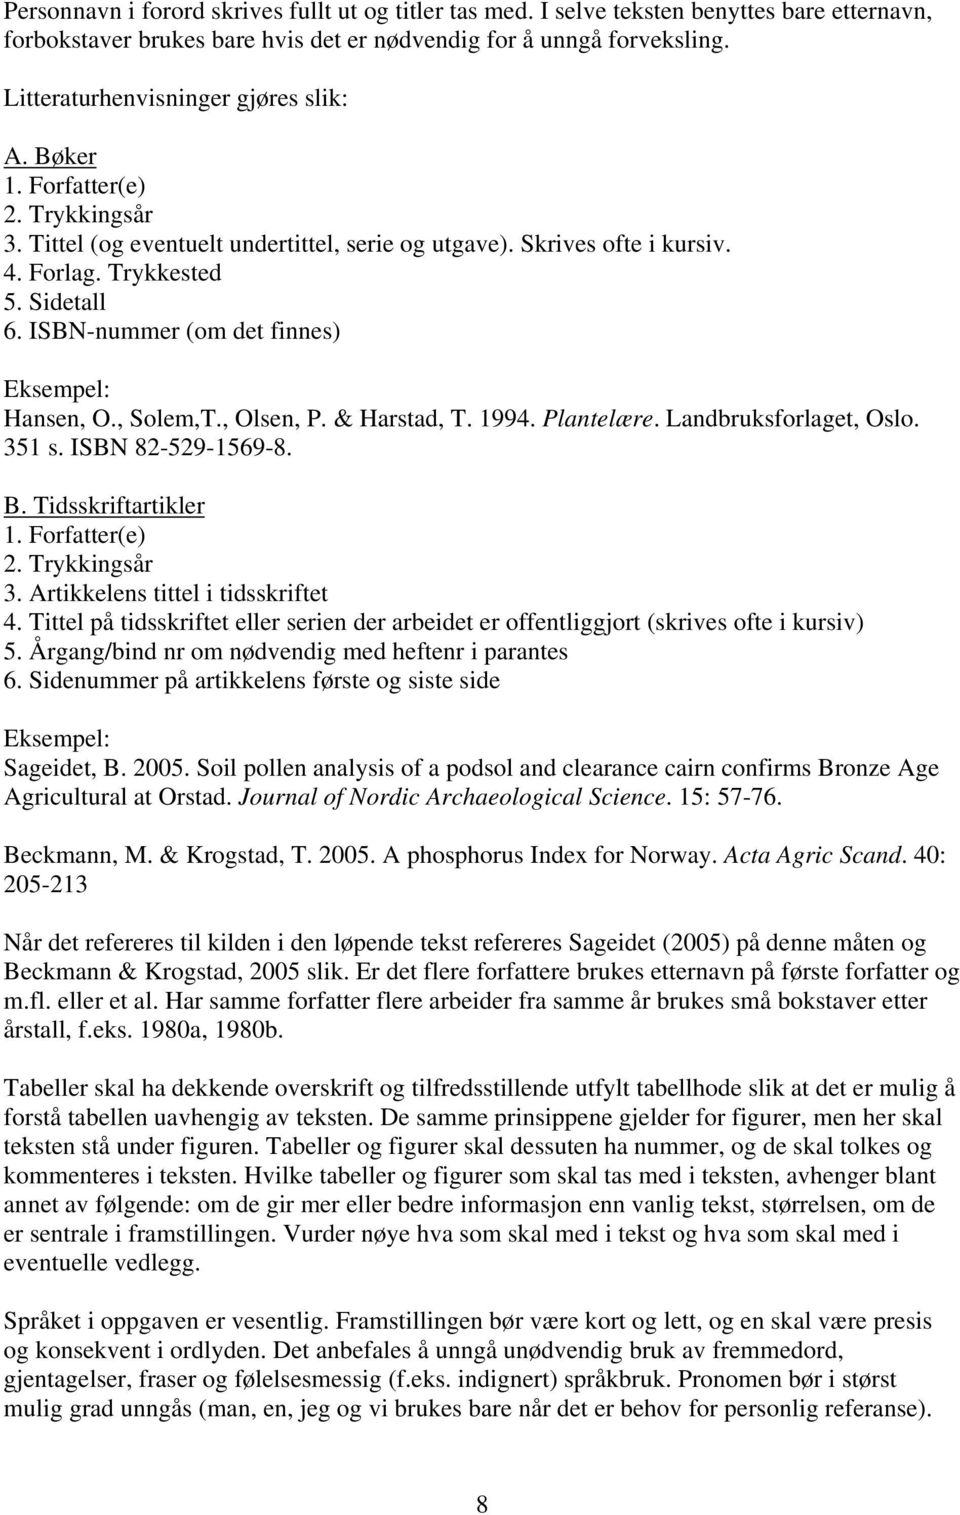 ISBN-nummer (om det finnes) Eksempel: Hansen, O., Solem,T., Olsen, P. & Harstad, T. 1994. Plantelære. Landbruksforlaget, Oslo. 351 s. ISBN 82-529-1569-8. B. Tidsskriftartikler 1. Forfatter(e) 2.